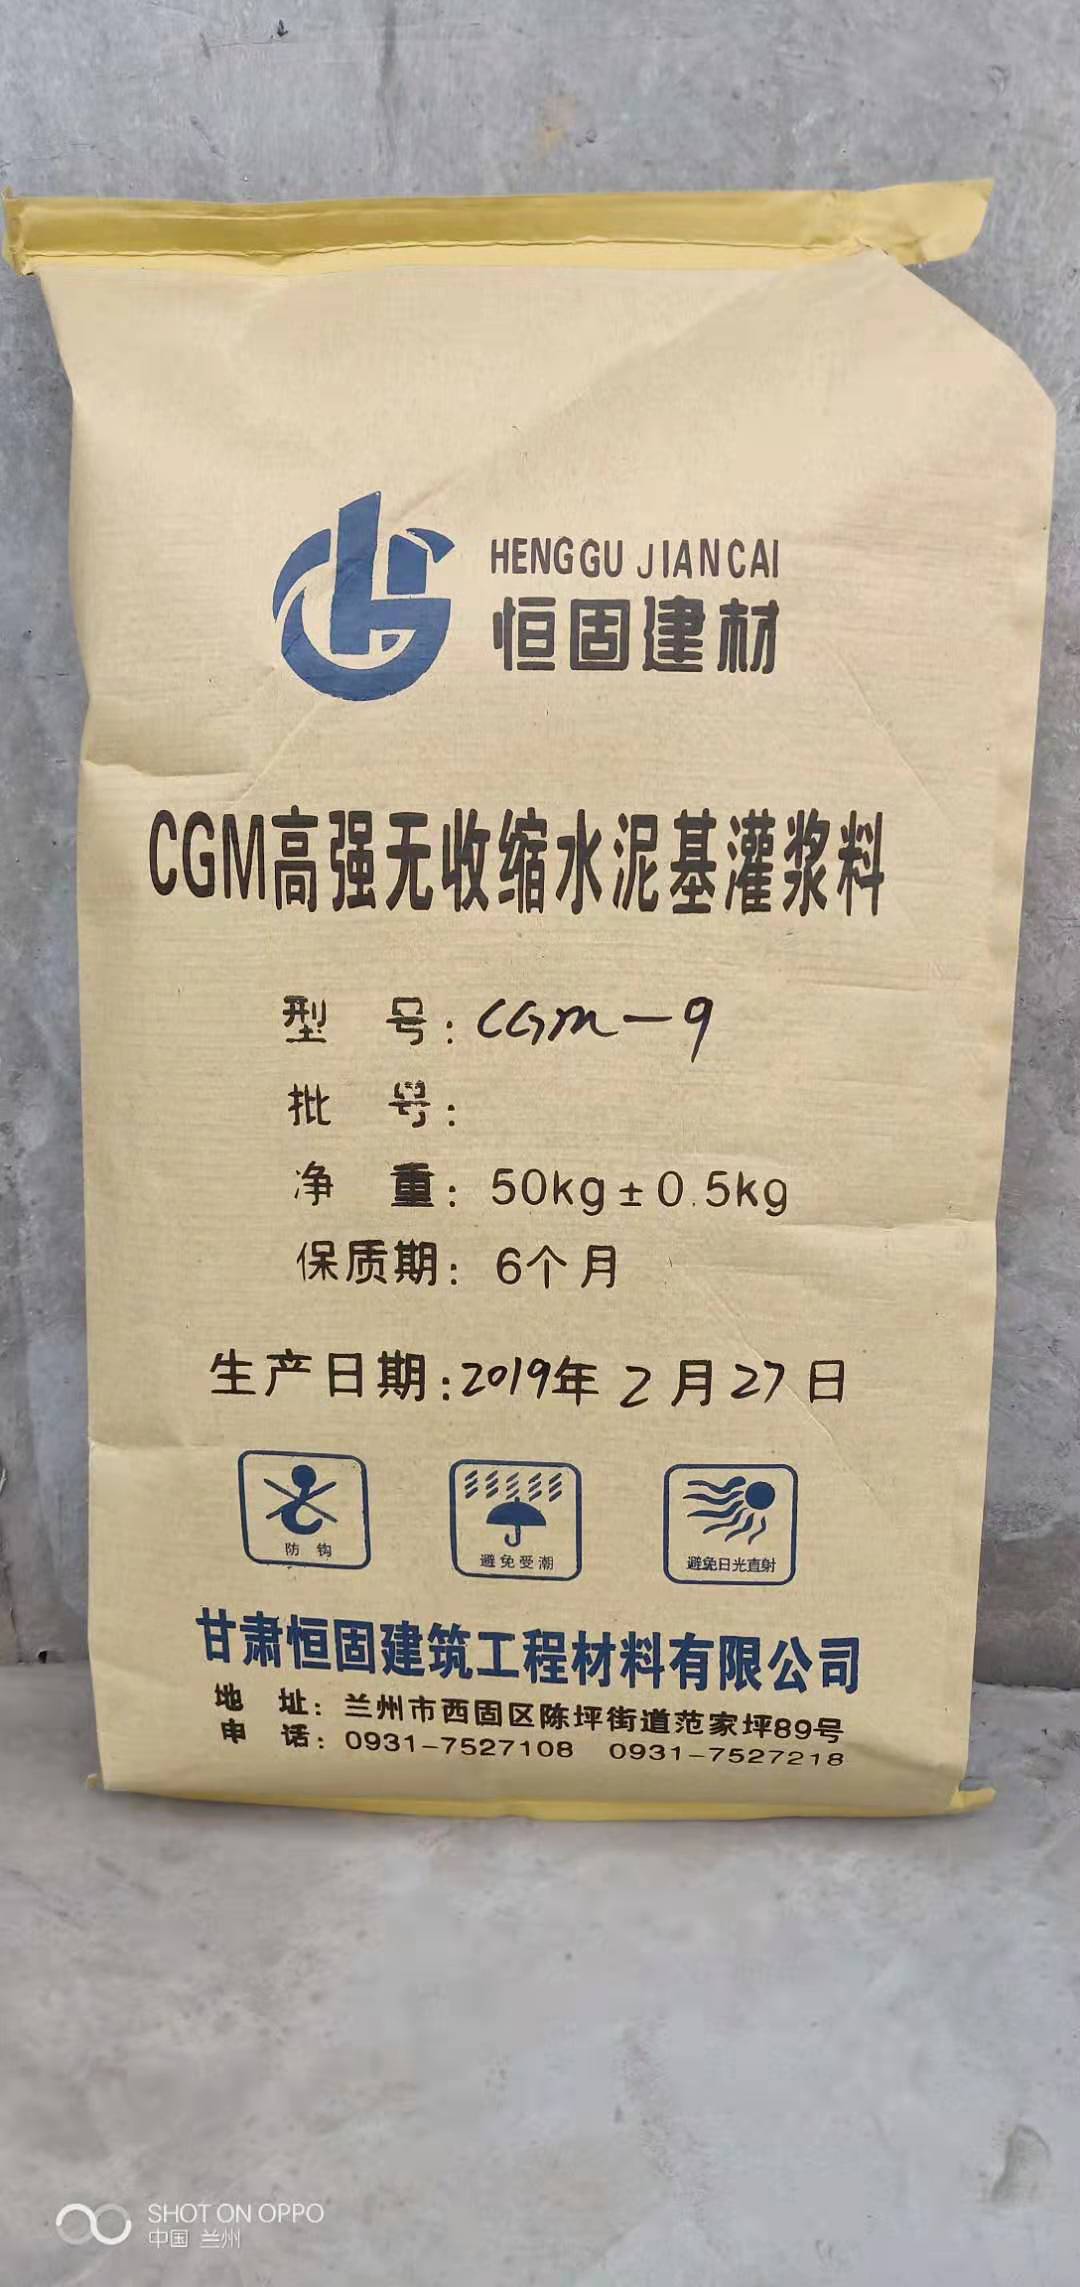 兰州灌浆料厂家报价CGM-9早强灌浆料厂家直销